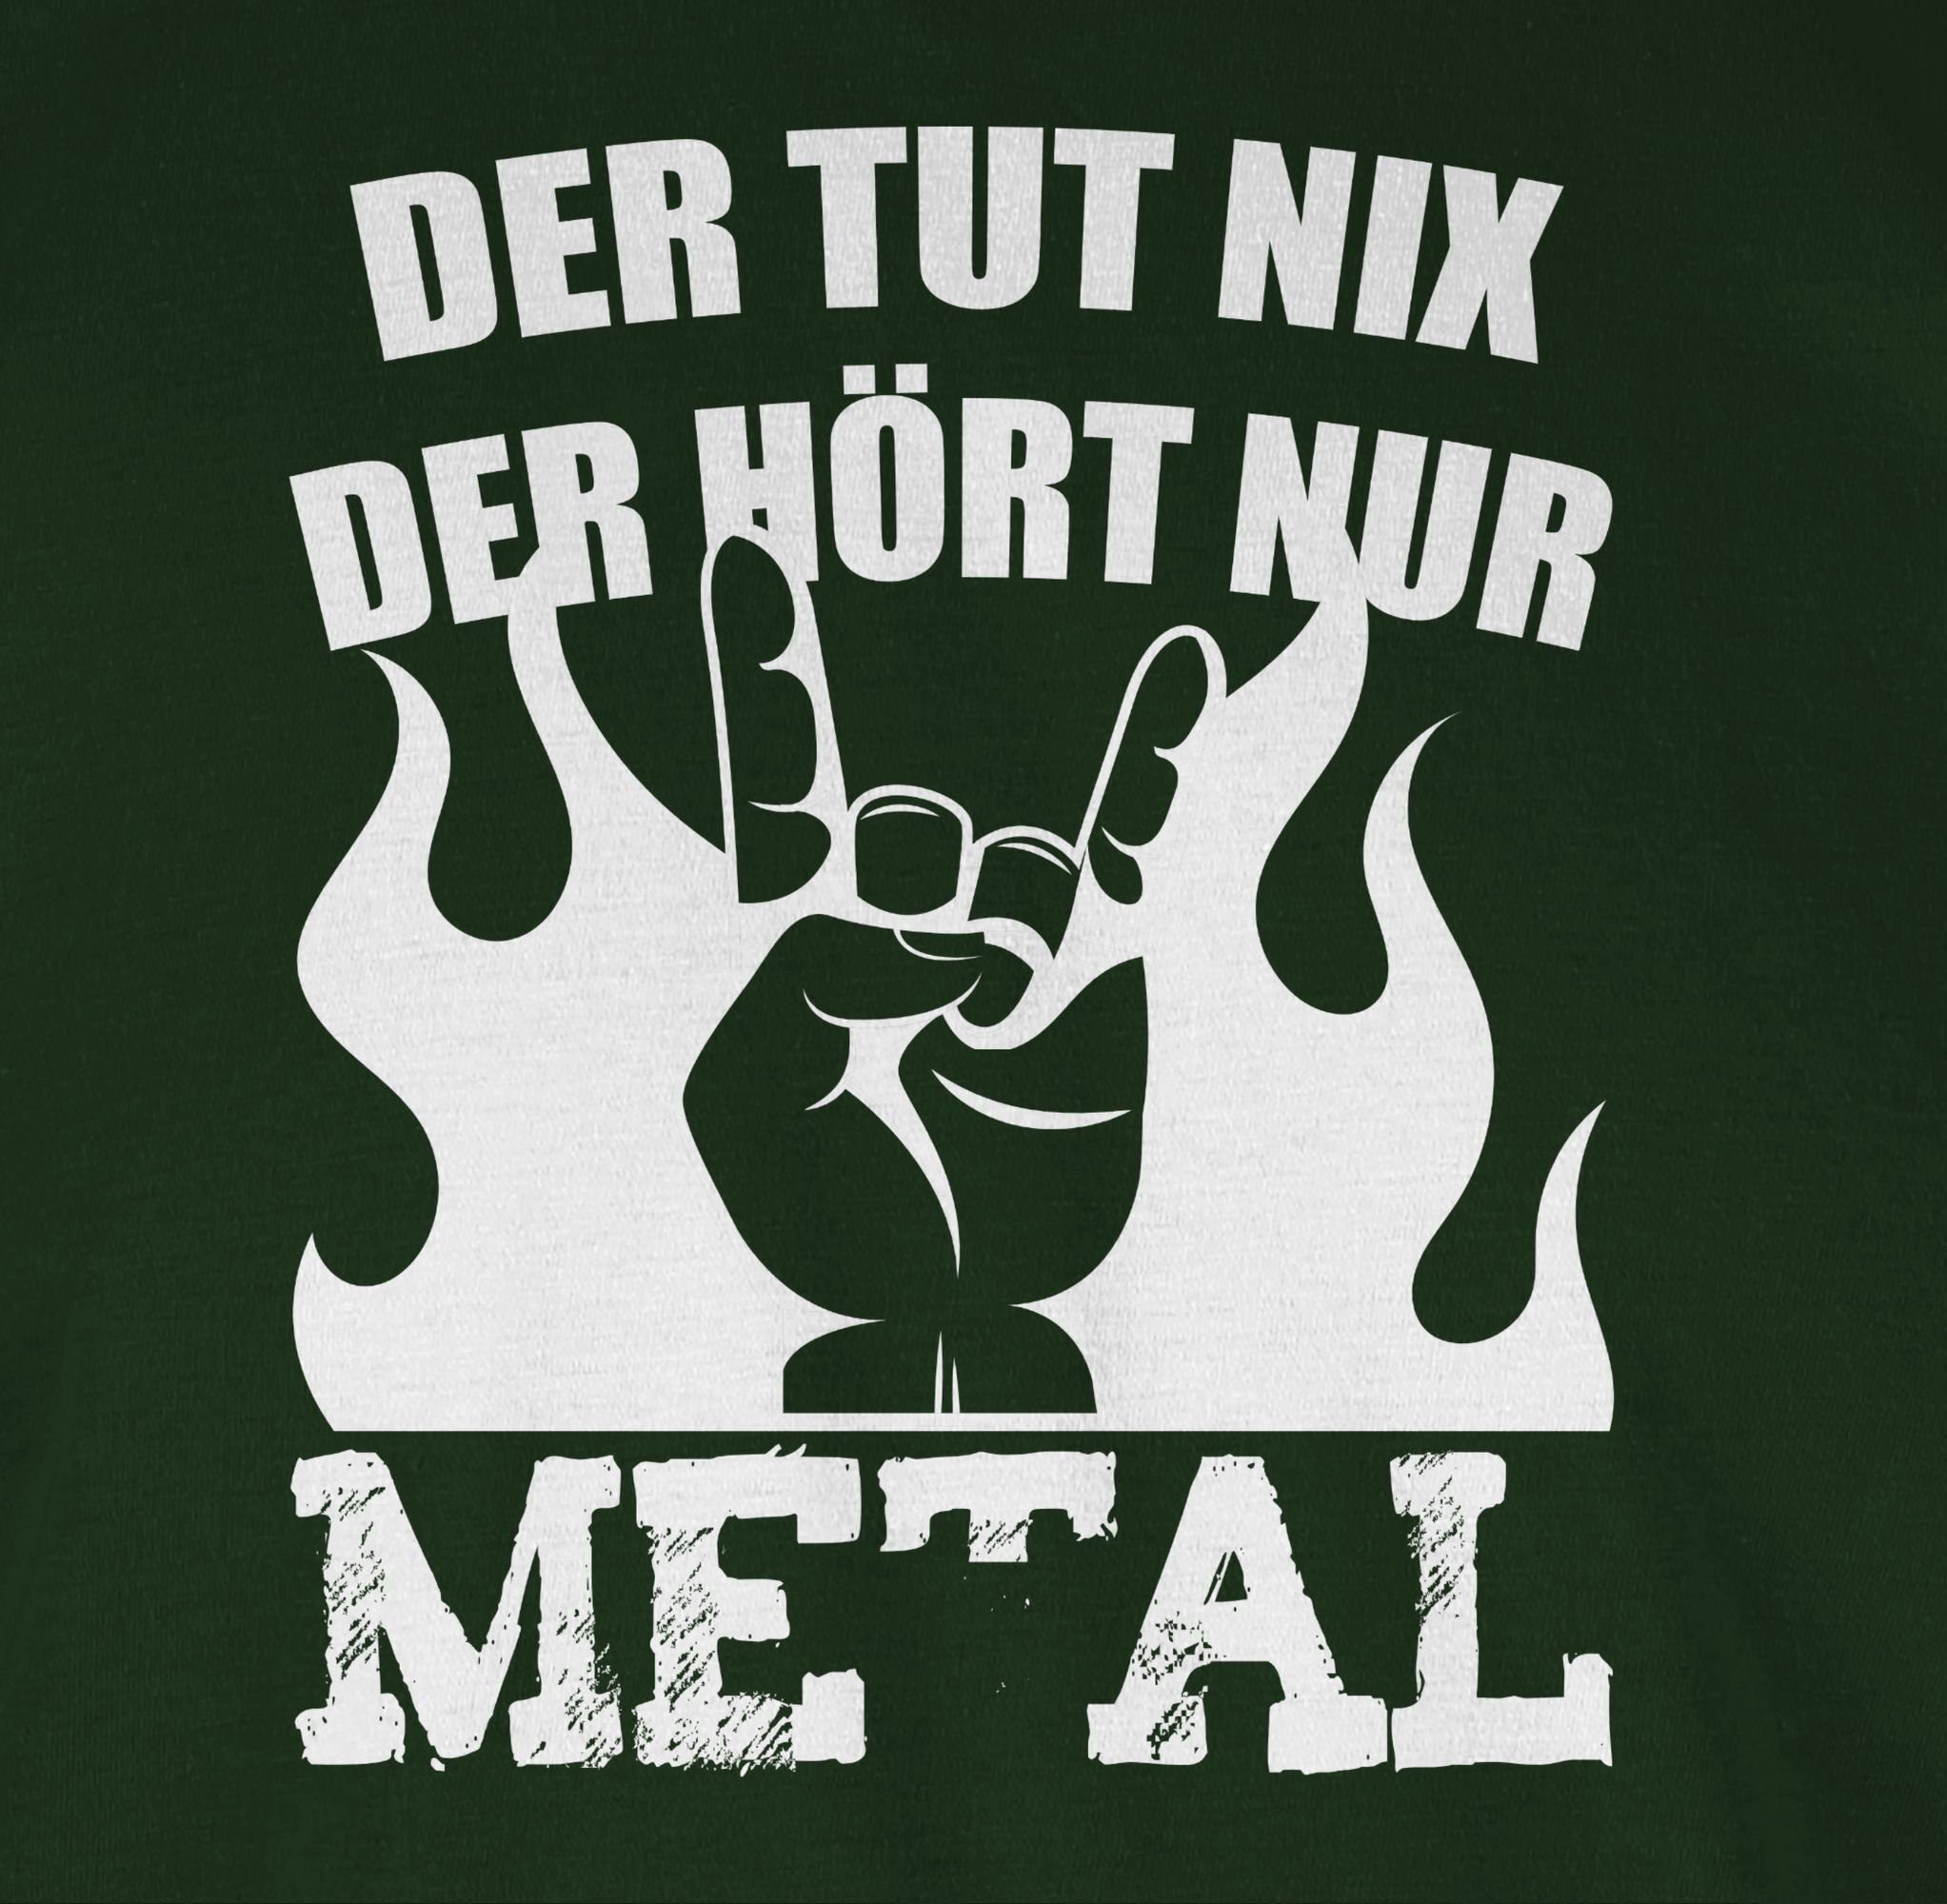 hört 03 Heavy nur Metal tut Der der Shirtracer nix Dunkelgrün T-Shirt Geschenke Metal